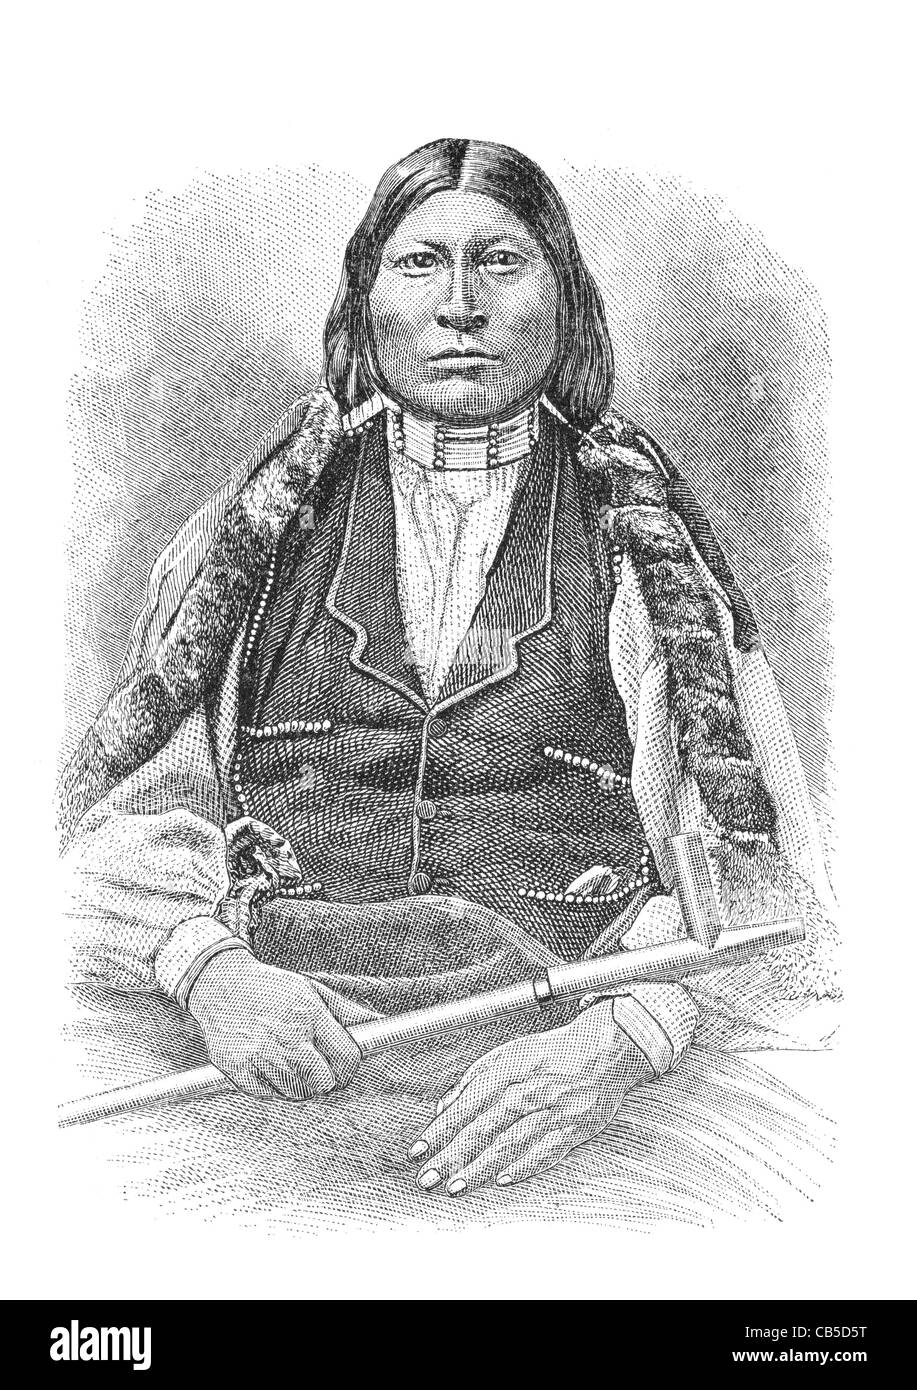 Les Arapaho native American nommé nez pointu. Banque D'Images